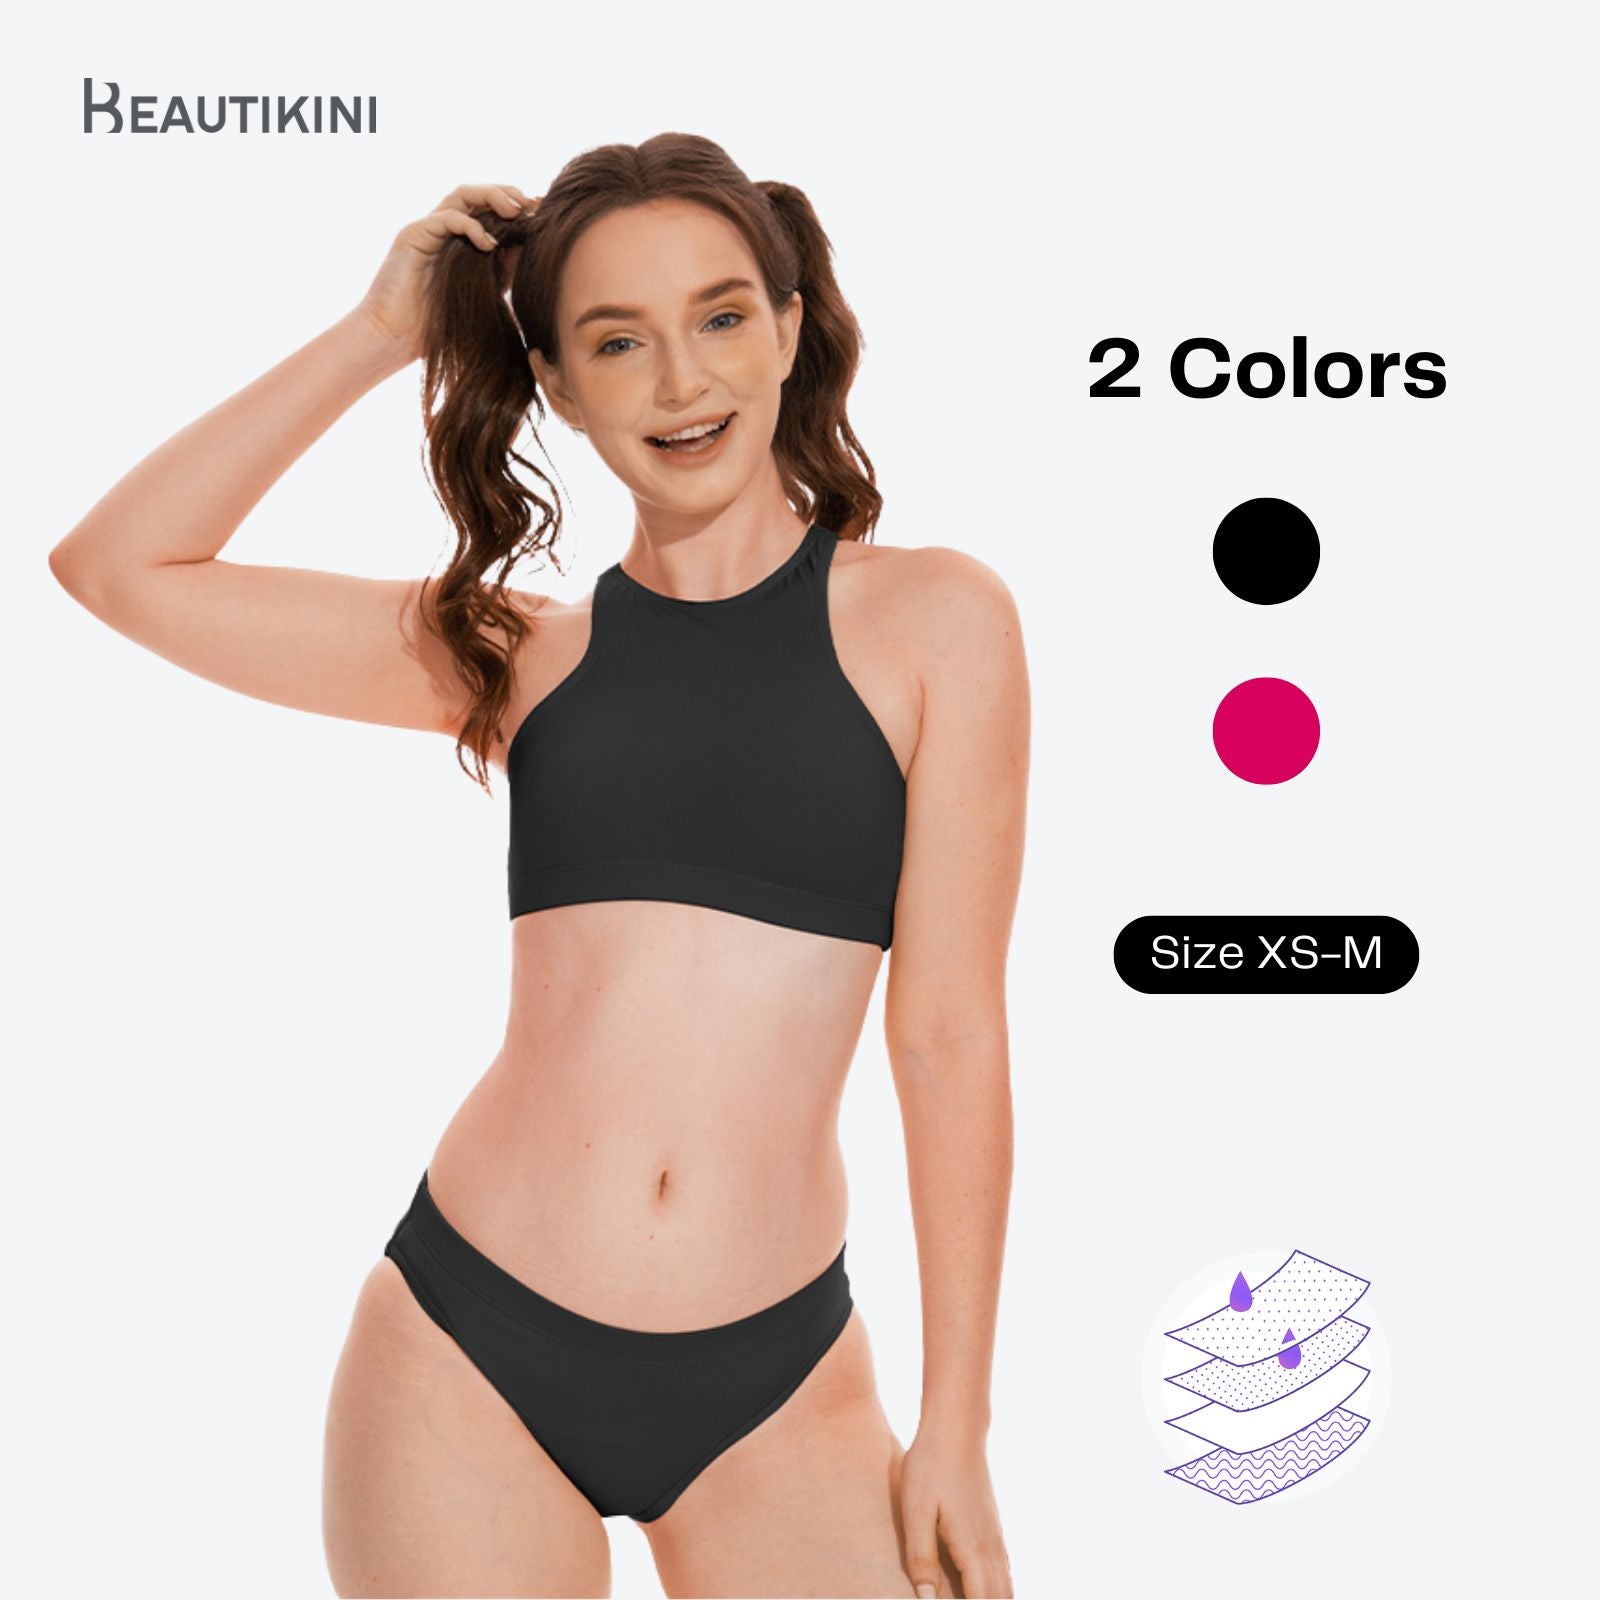 Beautikini Period Swimwear Two Piece